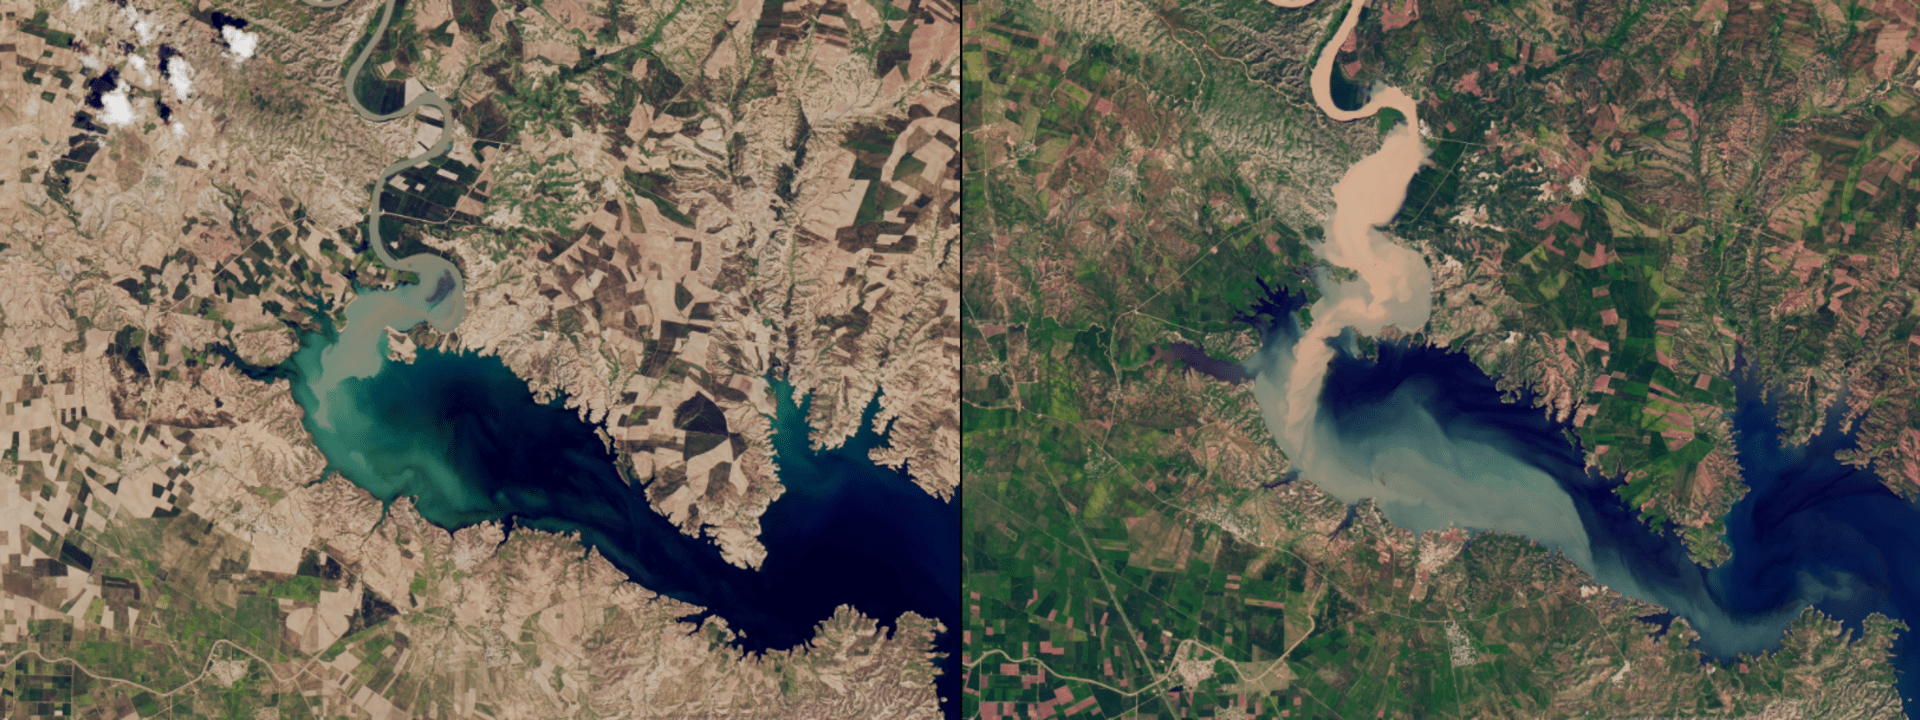 Galerie NASA: V Iráku se vylila řeka Tigris. Vlevo duben 2015, vpravo duben 2019.